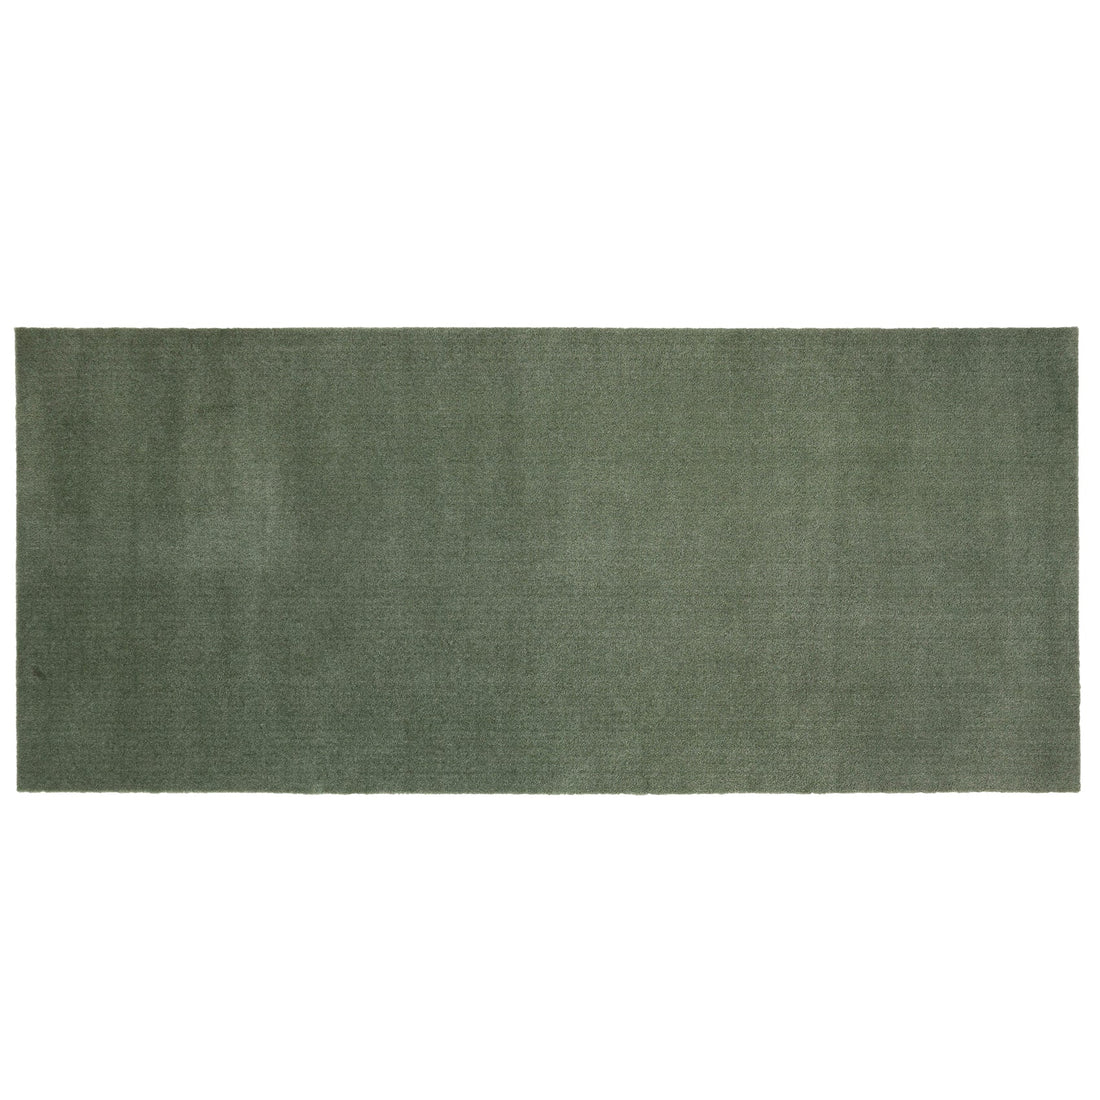 Decke/hatte 90 x 200 cm - Uni Farbe/staubiges Grün